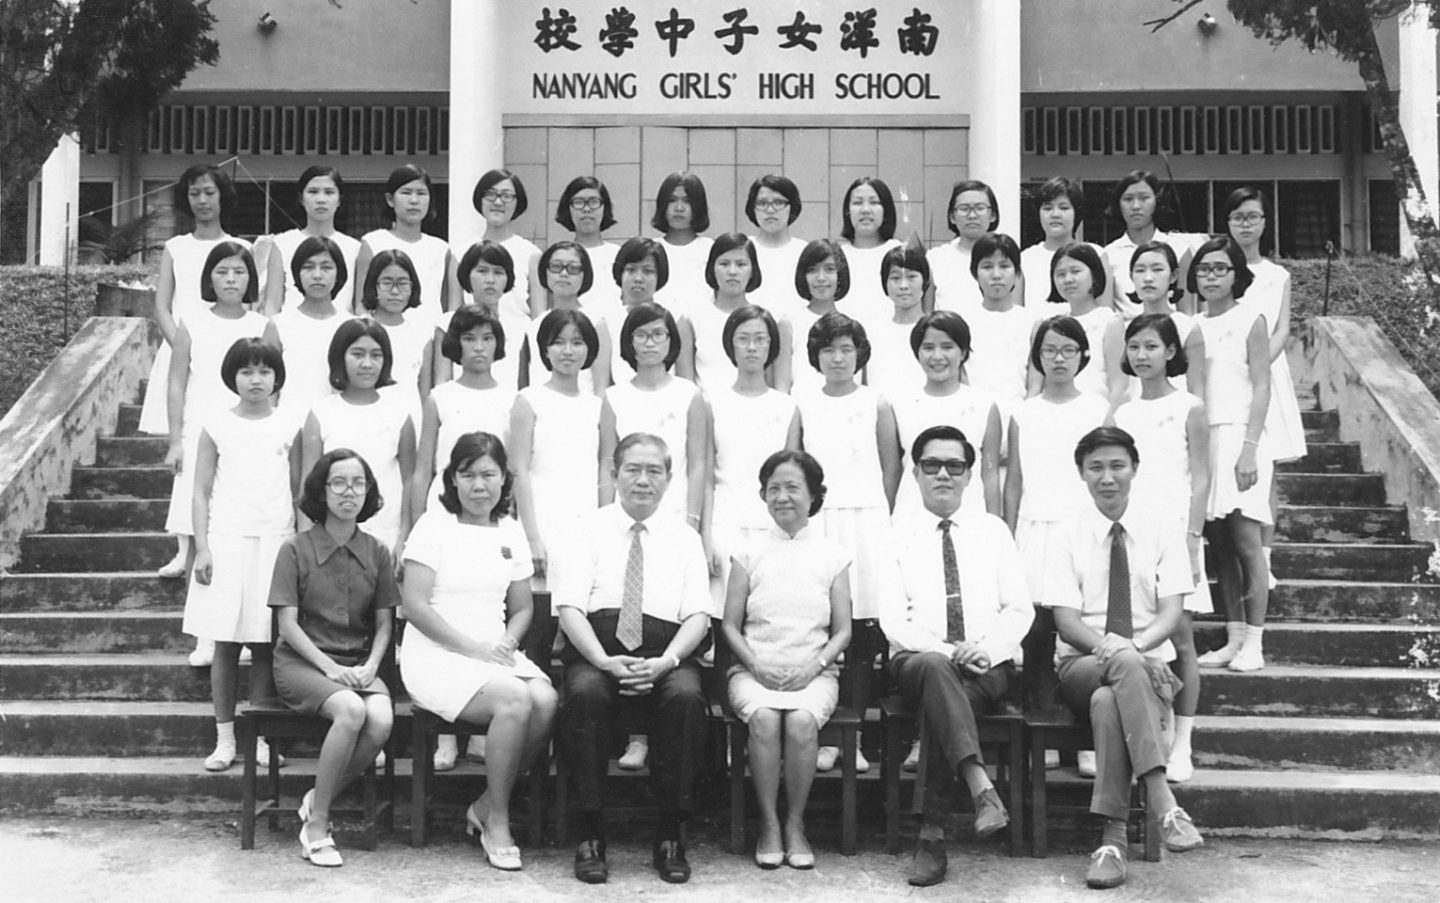 叶法传（前排左边第三位）和1973年南洋女子中学毕业班合影。尽管他从未曾接受过正式的英语教育，但他还是一名执教了27年的英语老师。 叶法传在1949年的一次聚会上为当时的校长Mdm Liew Yuen Sien作翻译后，就受邀在南洋女子中学校任教。